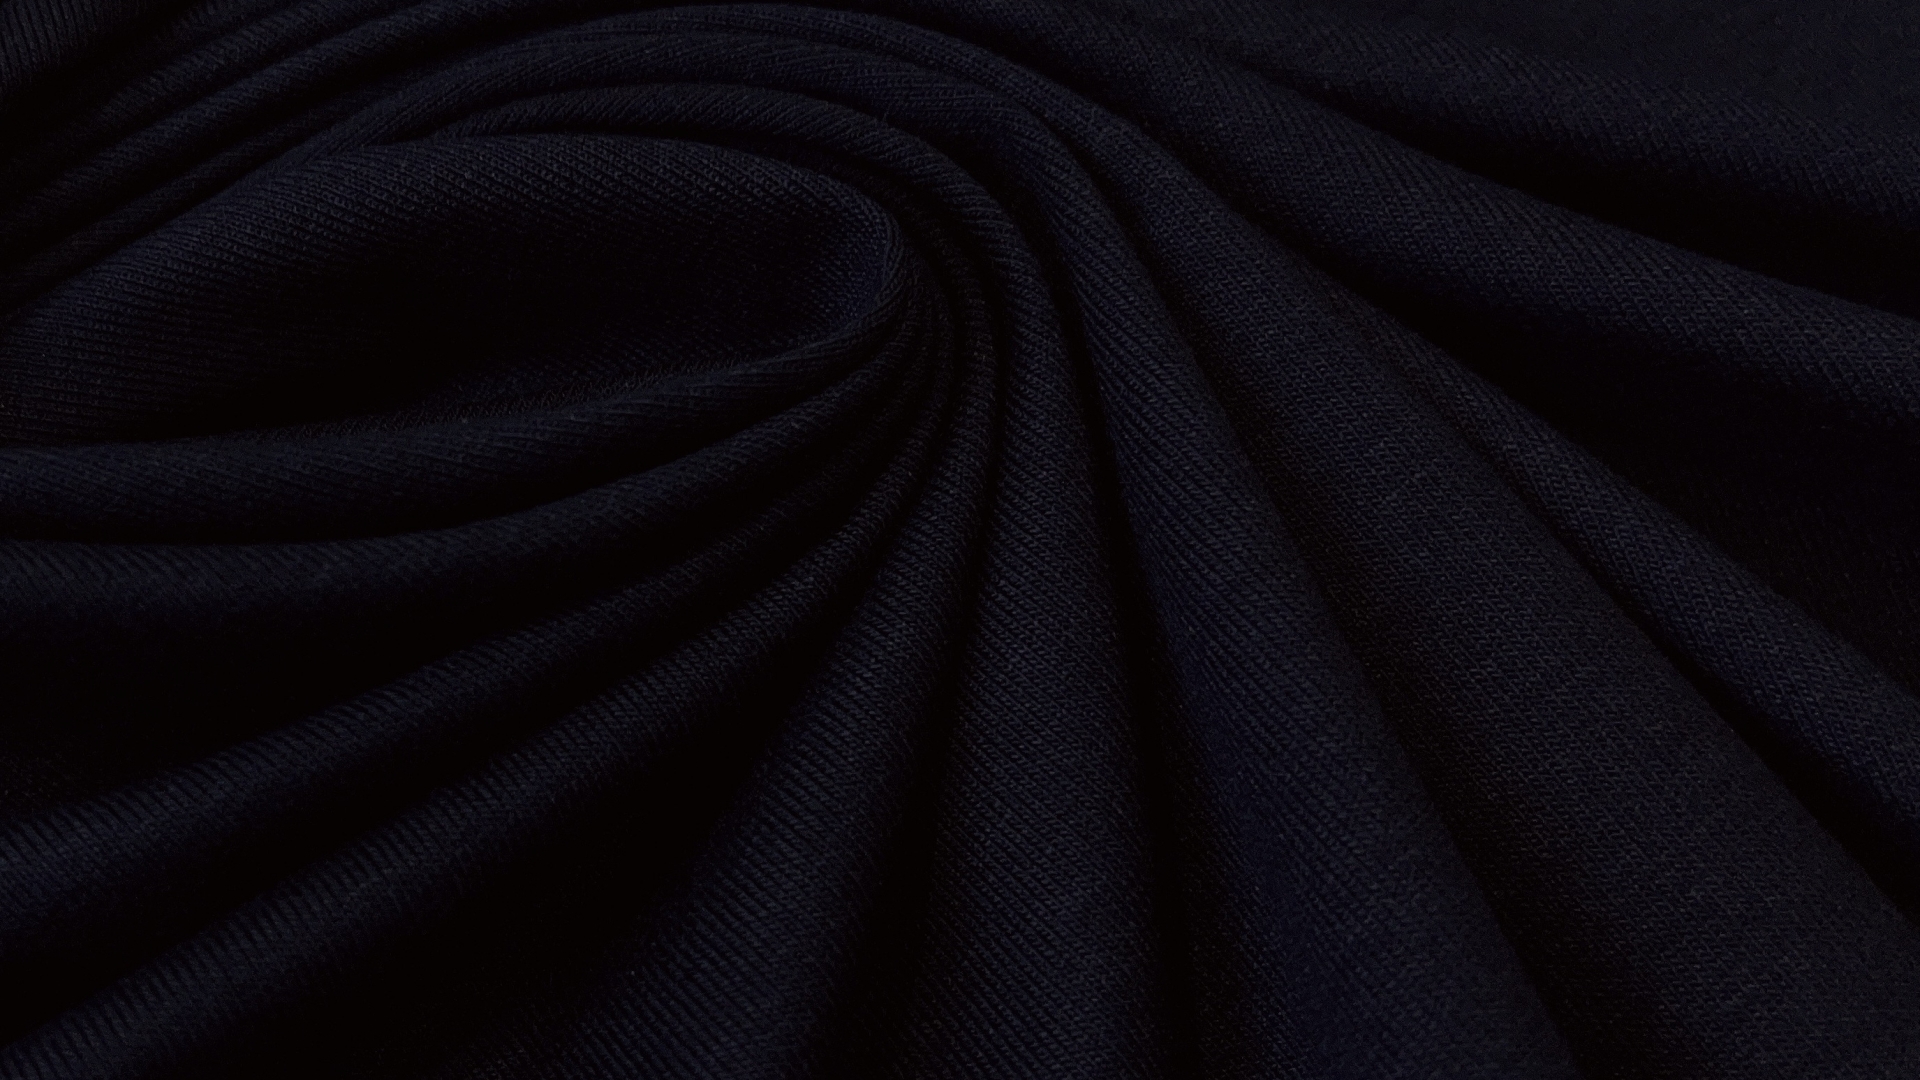 Вискозный трикотаж темно-синего цвета. Идеально подходит для пошива футболок, летних маек и свободных платьев.